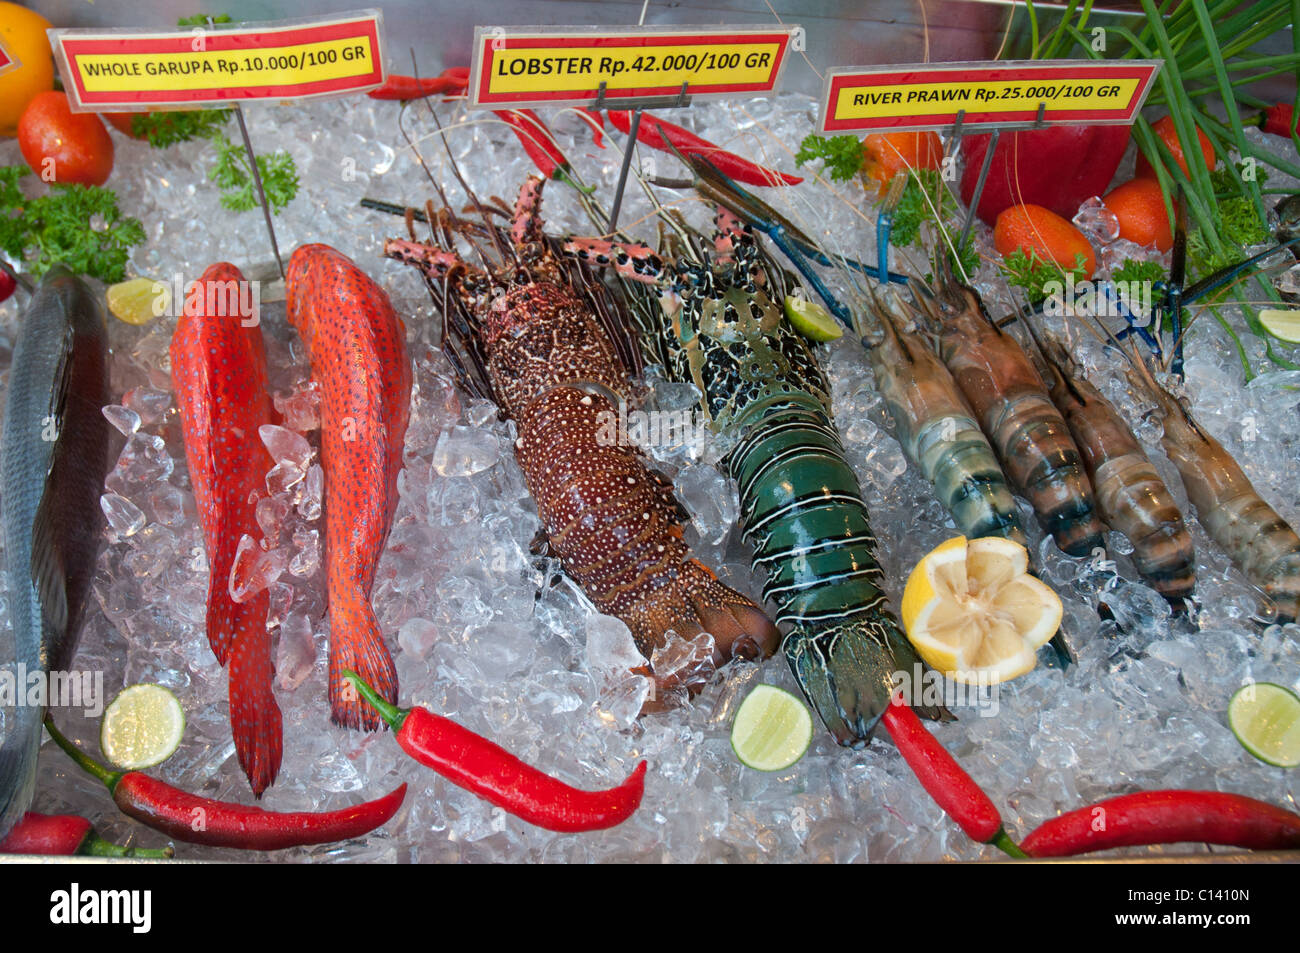 Visualización de pescado fresco en hielo fuera de un restaurante en Ubud, Bali, Indonesia Foto de stock